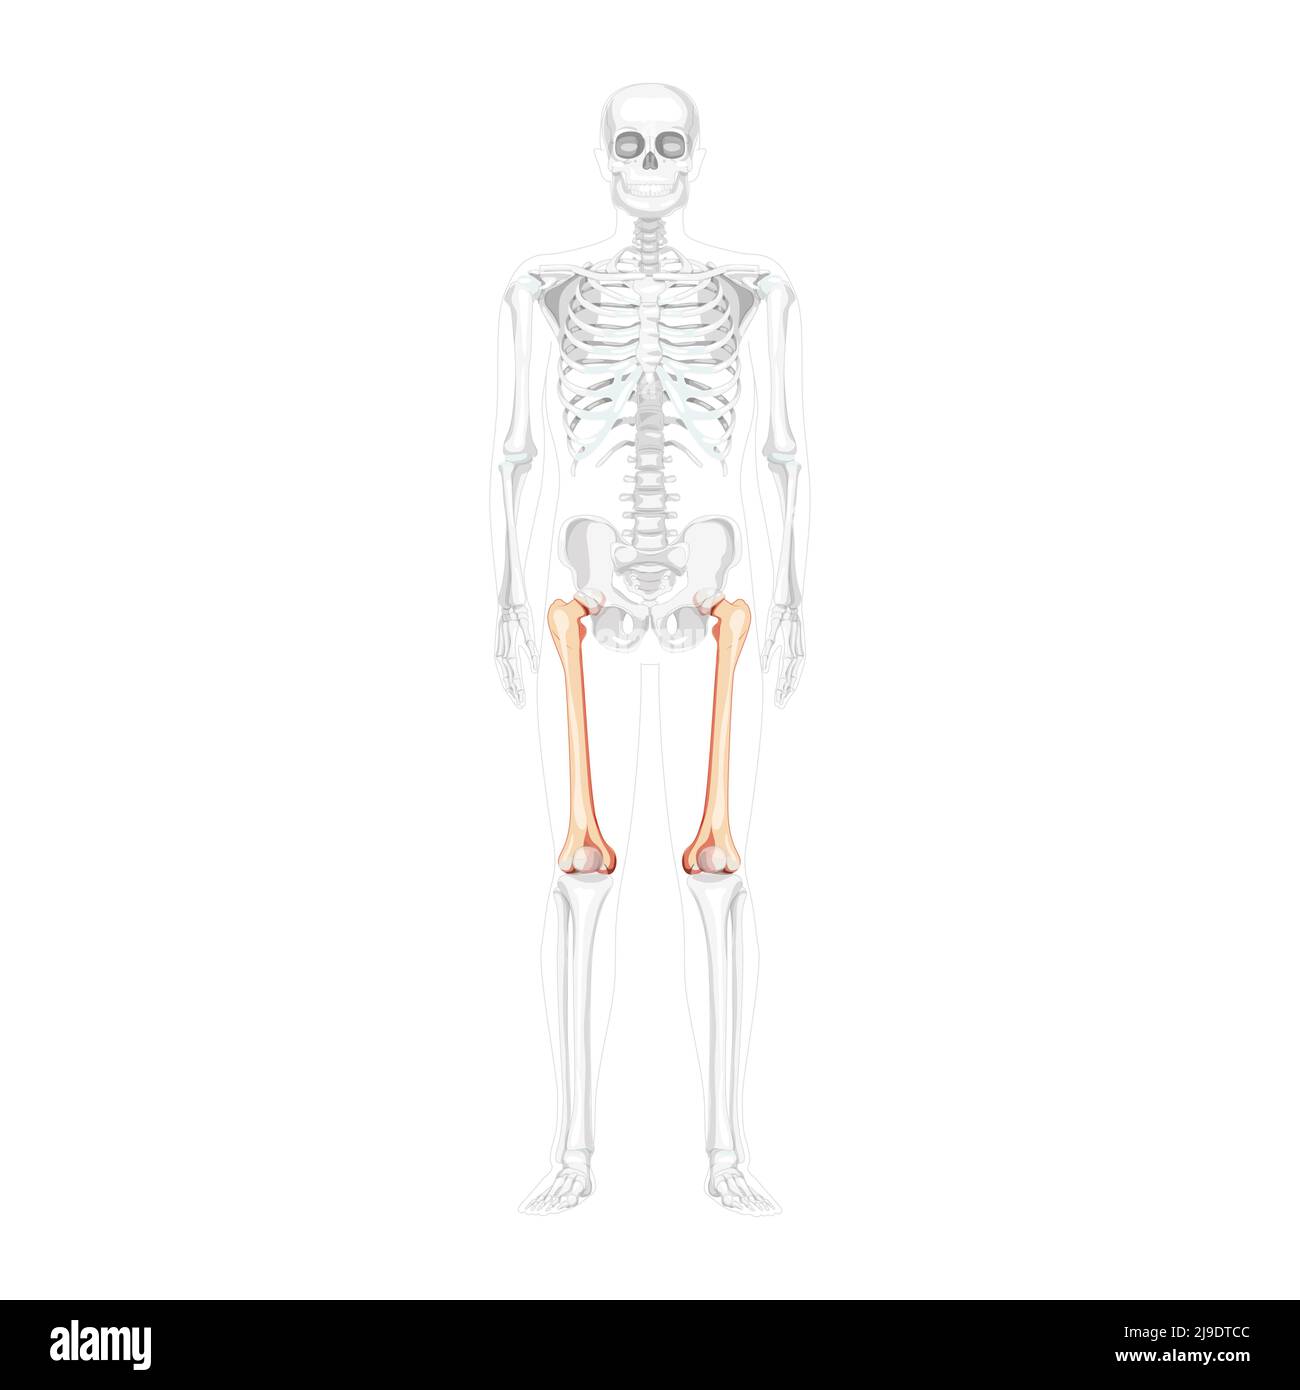 Scheletro femore coscia osso anteriore umano Vista ventrale anteriore con posizione delle ossa parzialmente trasparente. Set di 3D immagini vettoriali realistiche piatte di colore naturale dell'anatomia isolata su sfondo bianco Illustrazione Vettoriale